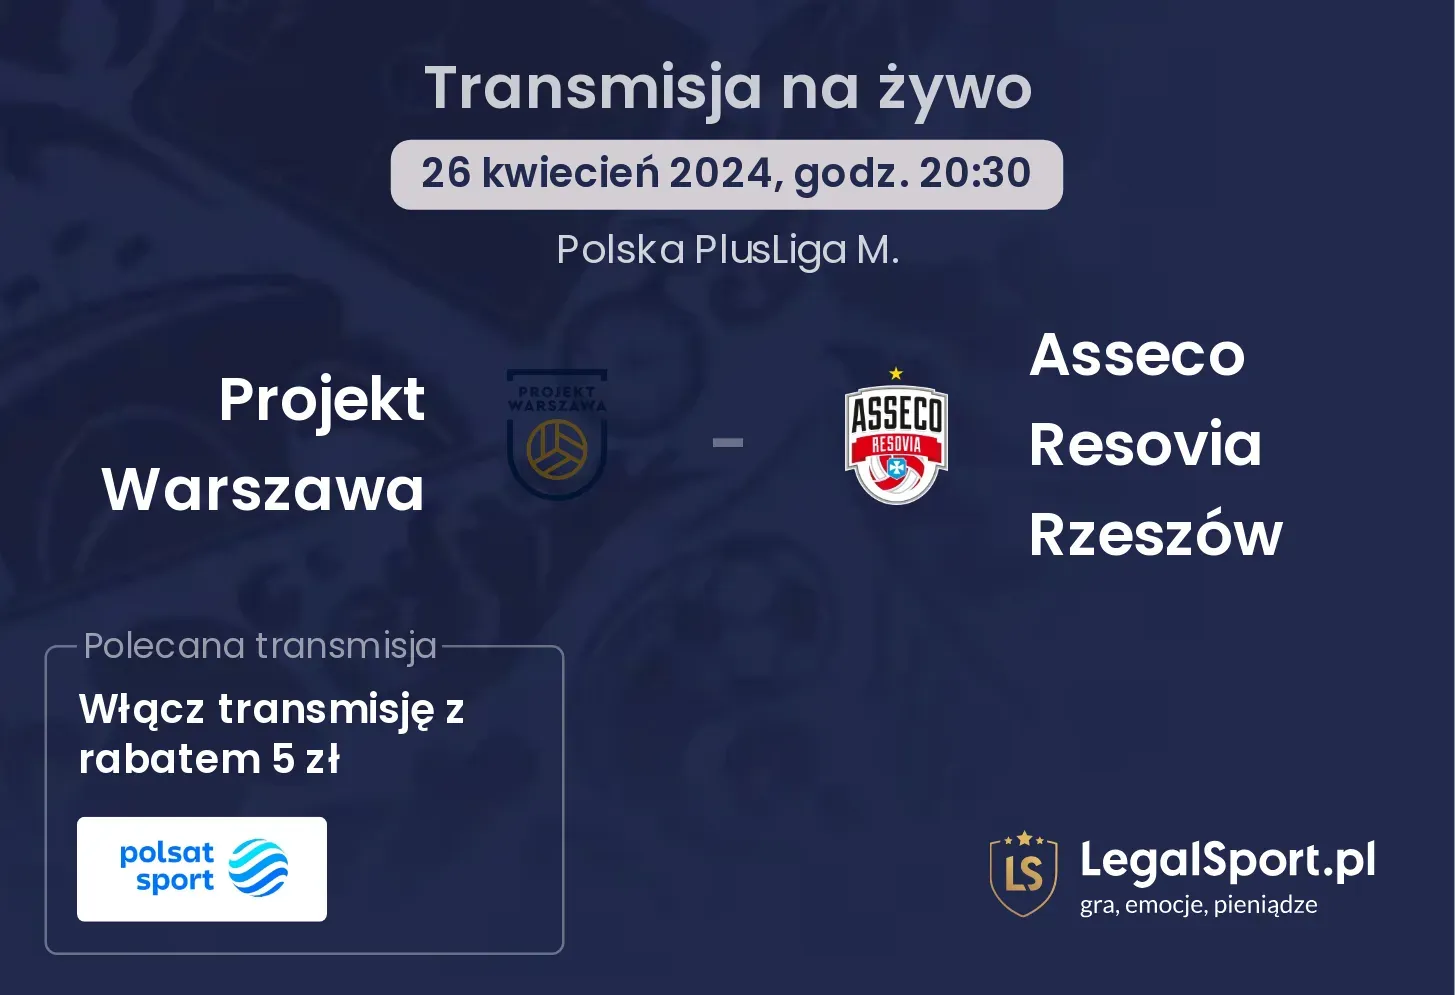 Projekt Warszawa - Asseco Resovia Rzeszów transmisja na żywo